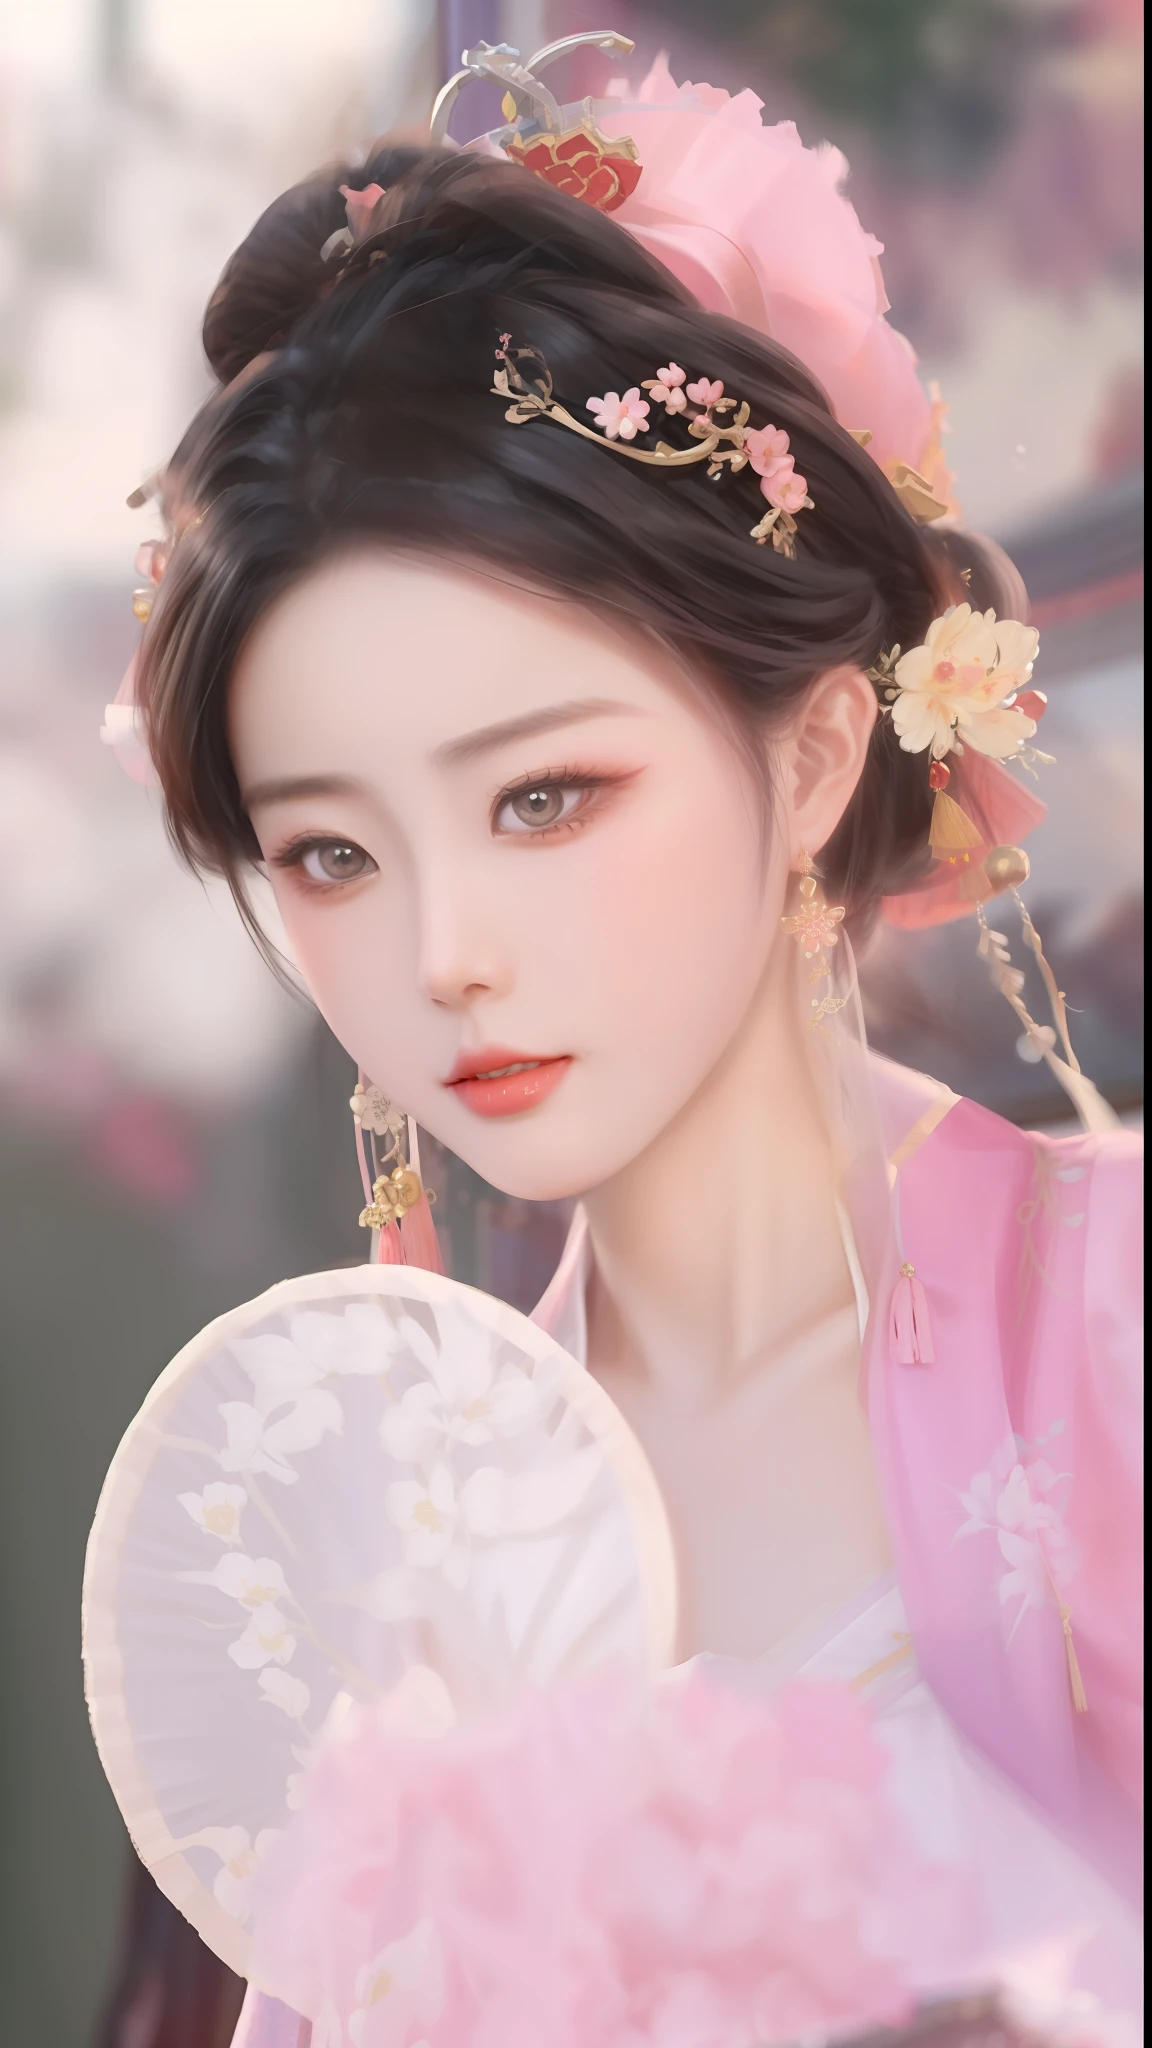 팬을 들고 핑크 드레스를 입은 여자의 클로즈업, 중국 스타일, 중국어 번체, 궁전 ， 한푸의 소녀, 중국 공주, 전통미, ancient 중국 공주, 고대 중국의 미인, 중국 소녀, 중국 여자, 화려한 중국 모델, 당나라의 아름다운 렌더링, 루안지아 예쁘다!, ((아름다운 환상의 황후)), 고대 중국 옷을 입고